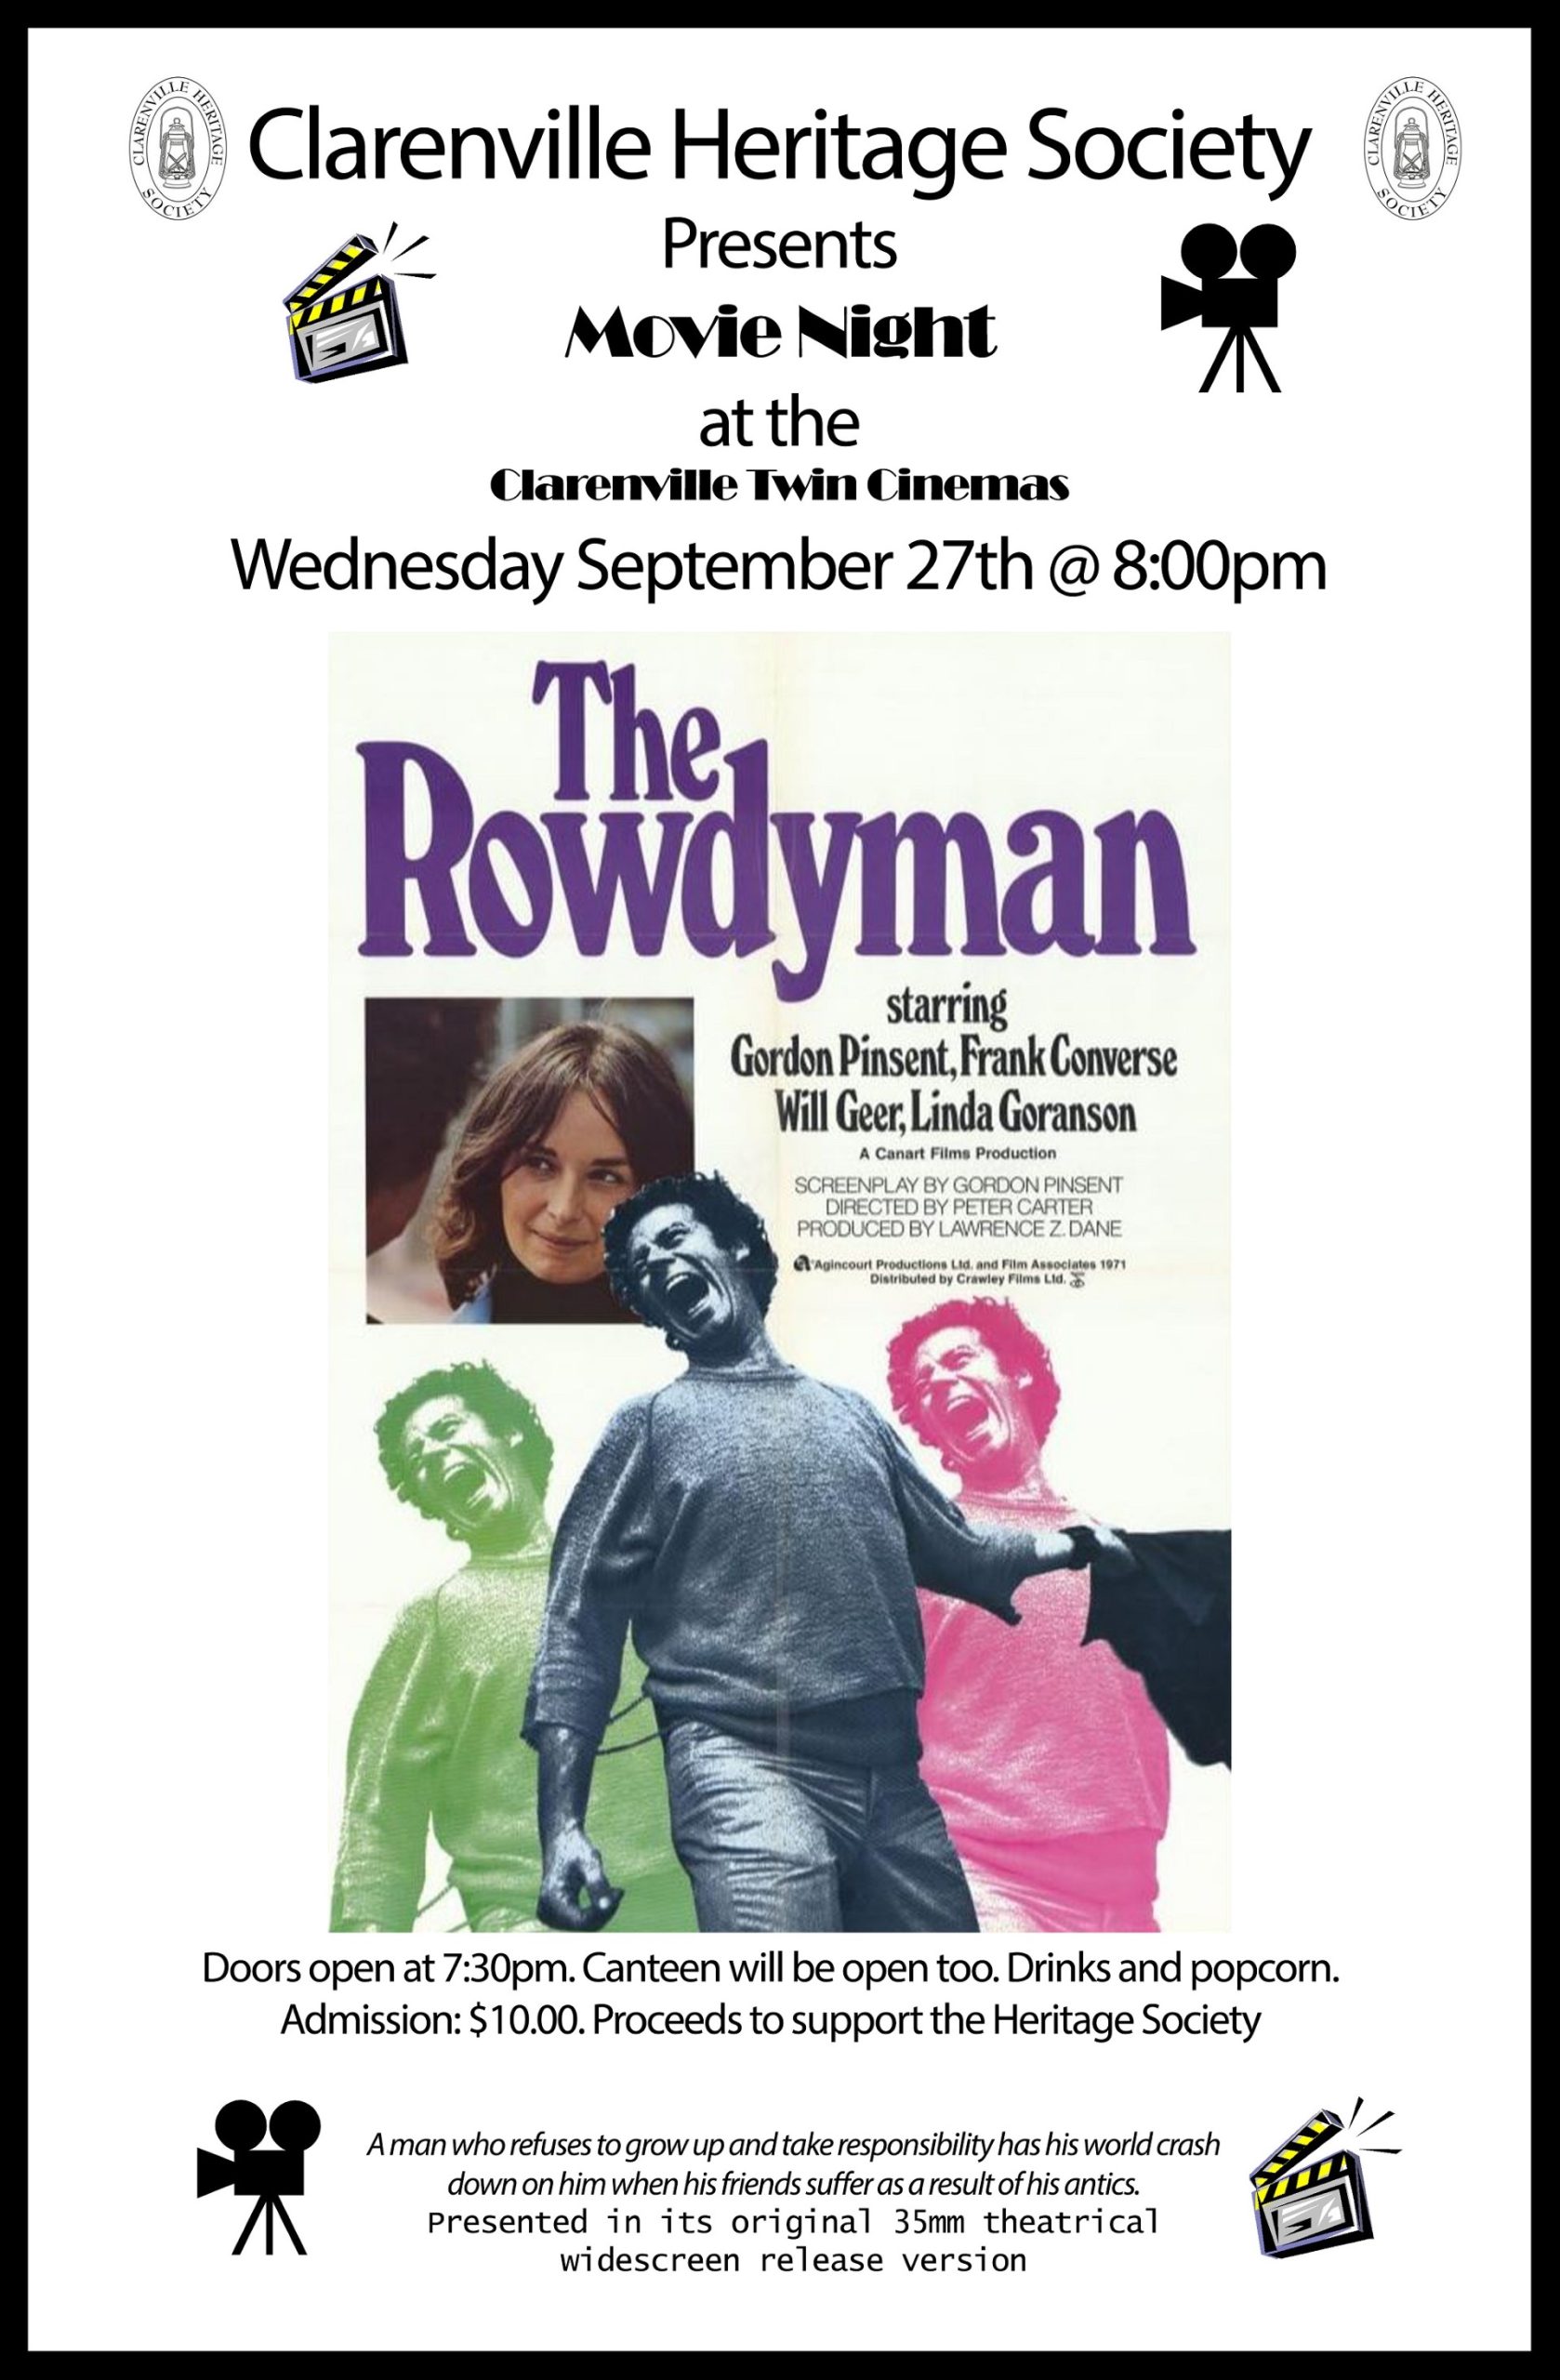 Movie Night featuring The Rowdyman